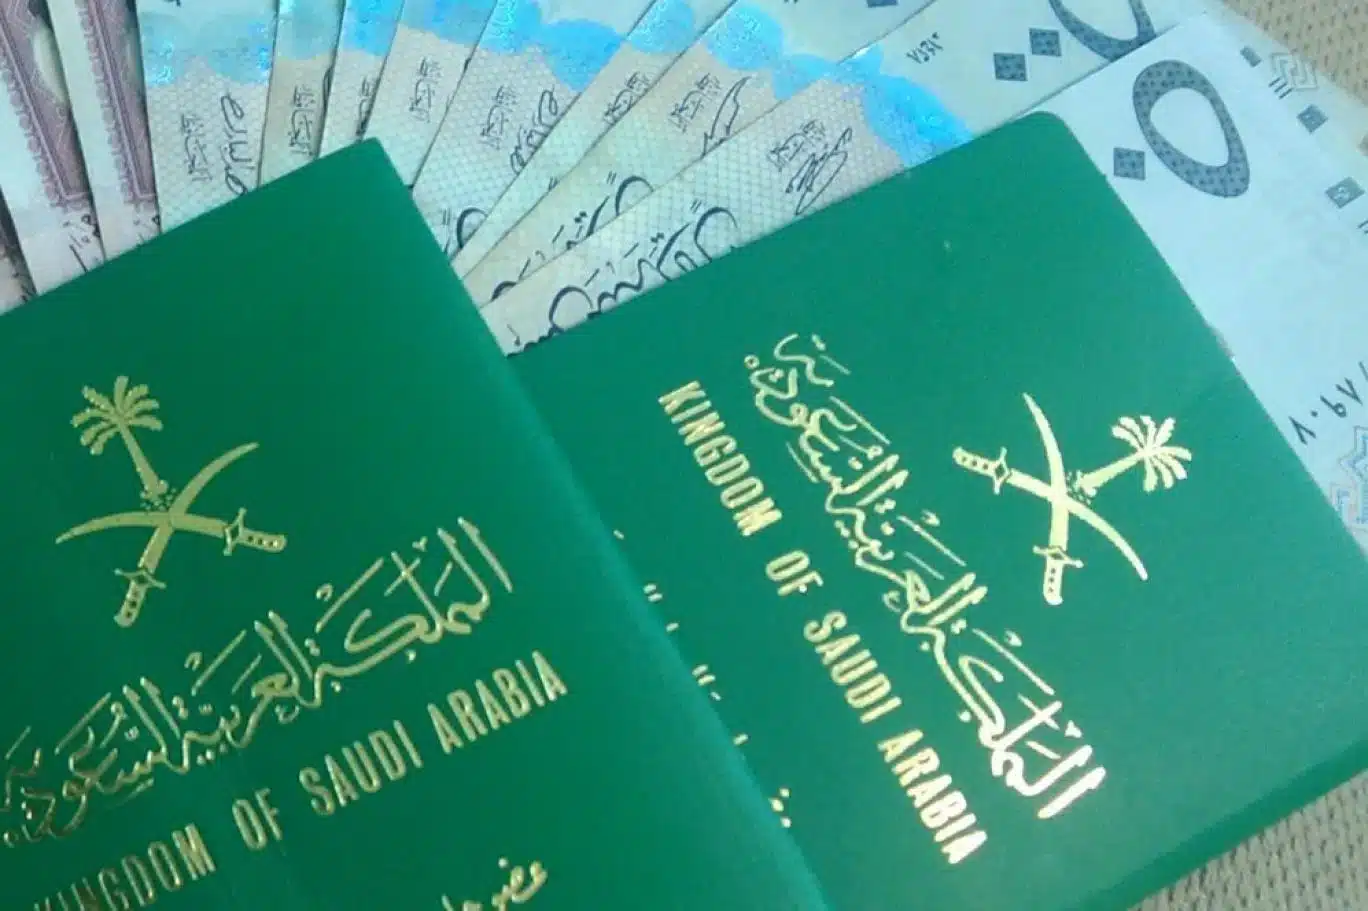  عقوبة عدم استلام جواز السفر بعد استخراجه والمدة المحددة للاستلام